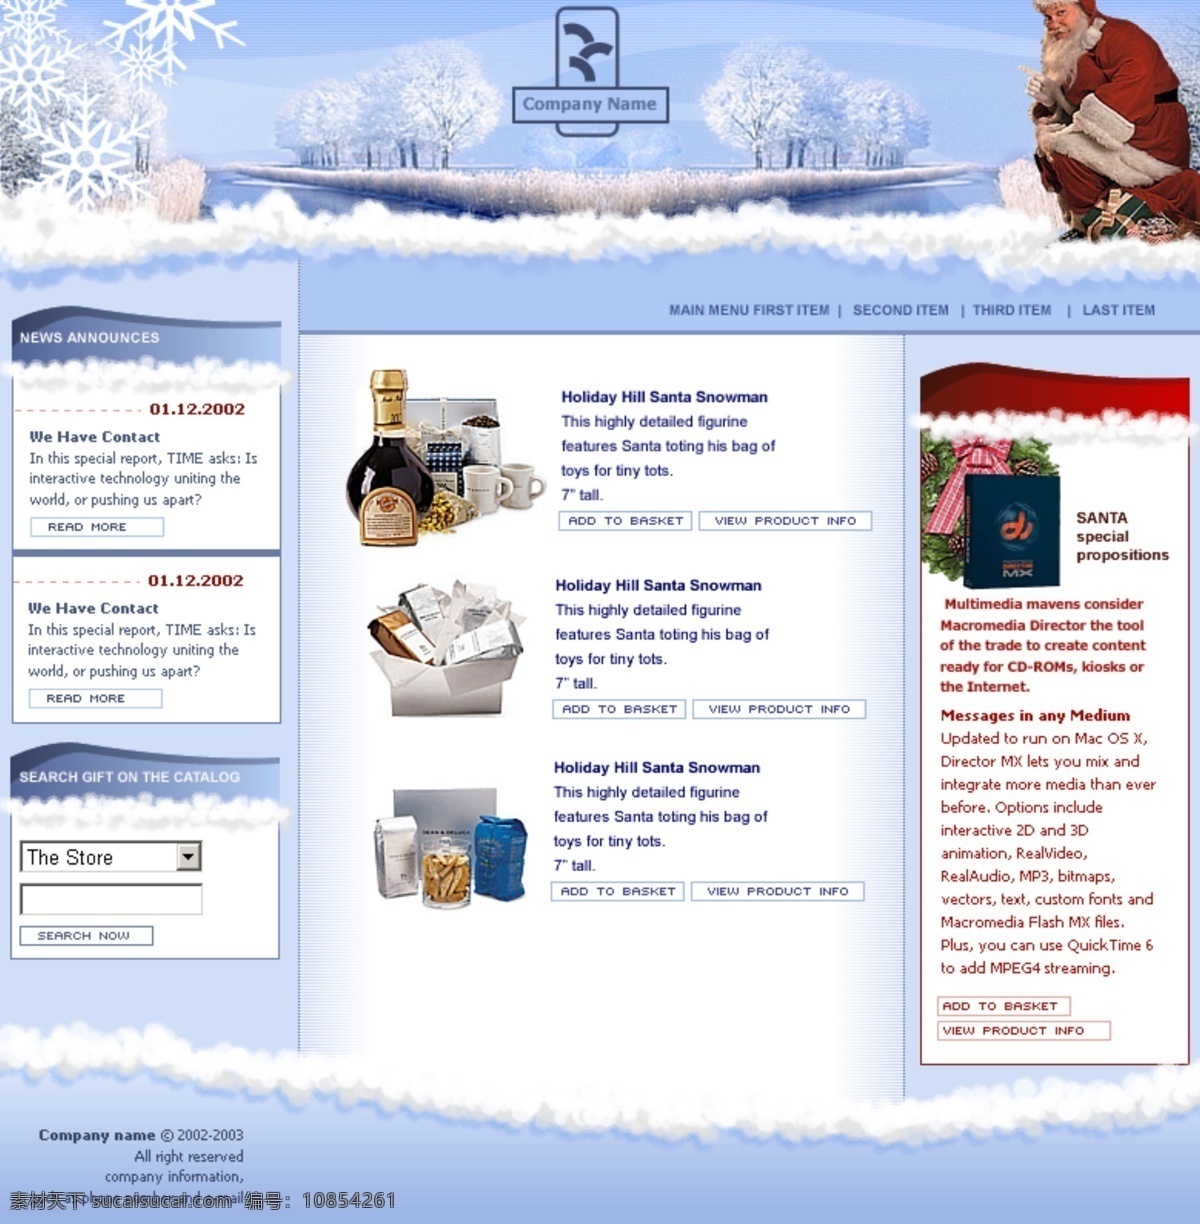 圣诞节 产品 模板 界面设计 礼品模板 圣诞节模板 食品模板 网页设计元素 网站平台模板 建站模板 免费 模板下载 网页素材 其他网页素材